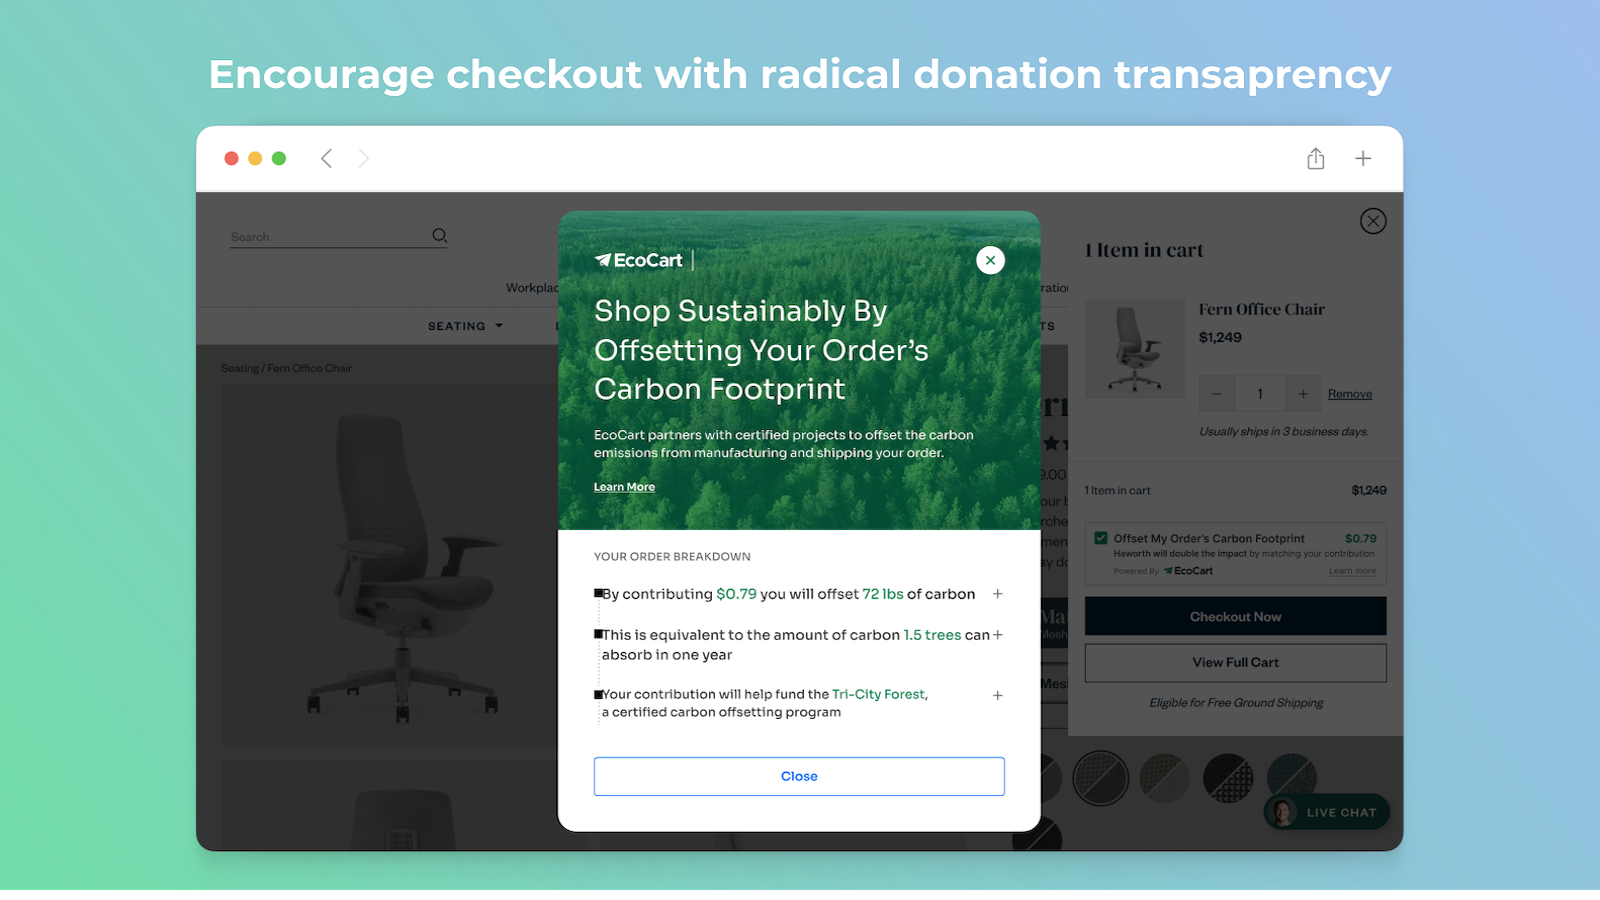 Incentive o checkout com transparência radical nas doações